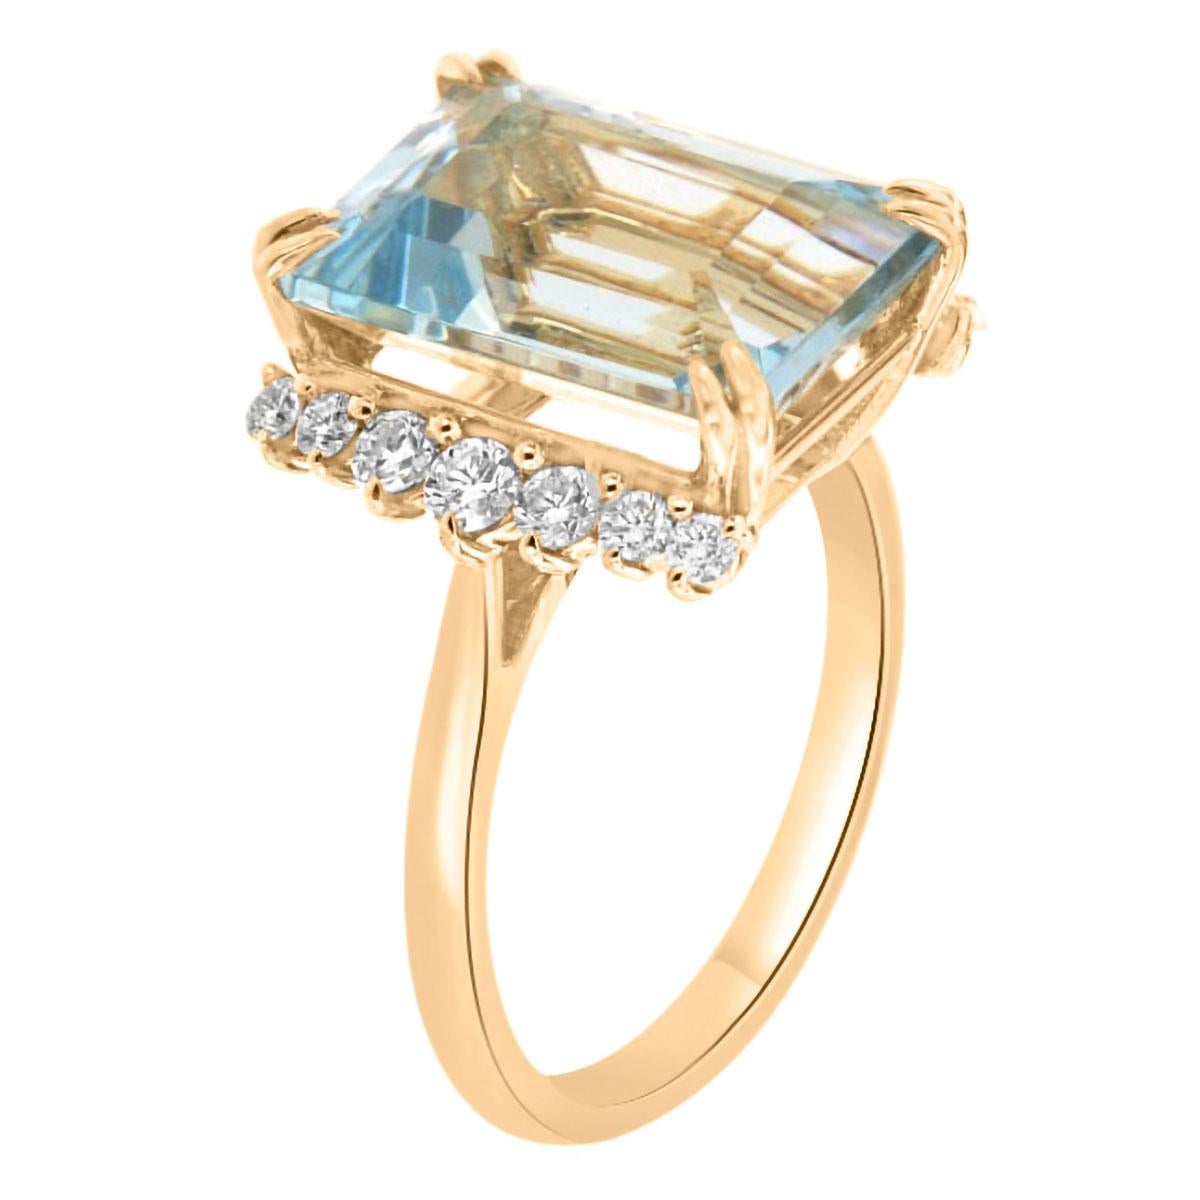 Diese 14k Gelbgold Ring verfügt über eine 7,02 Karat Smaragd Form Sky Blue Natural Aquamarin flankiert von vierzehn (14) brillanten runden Diamanten auf einem 1,8 MM breiten Band. 
Das Gesamtgewicht der Diamanten in diesem Ring beträgt 0,49 Karat.